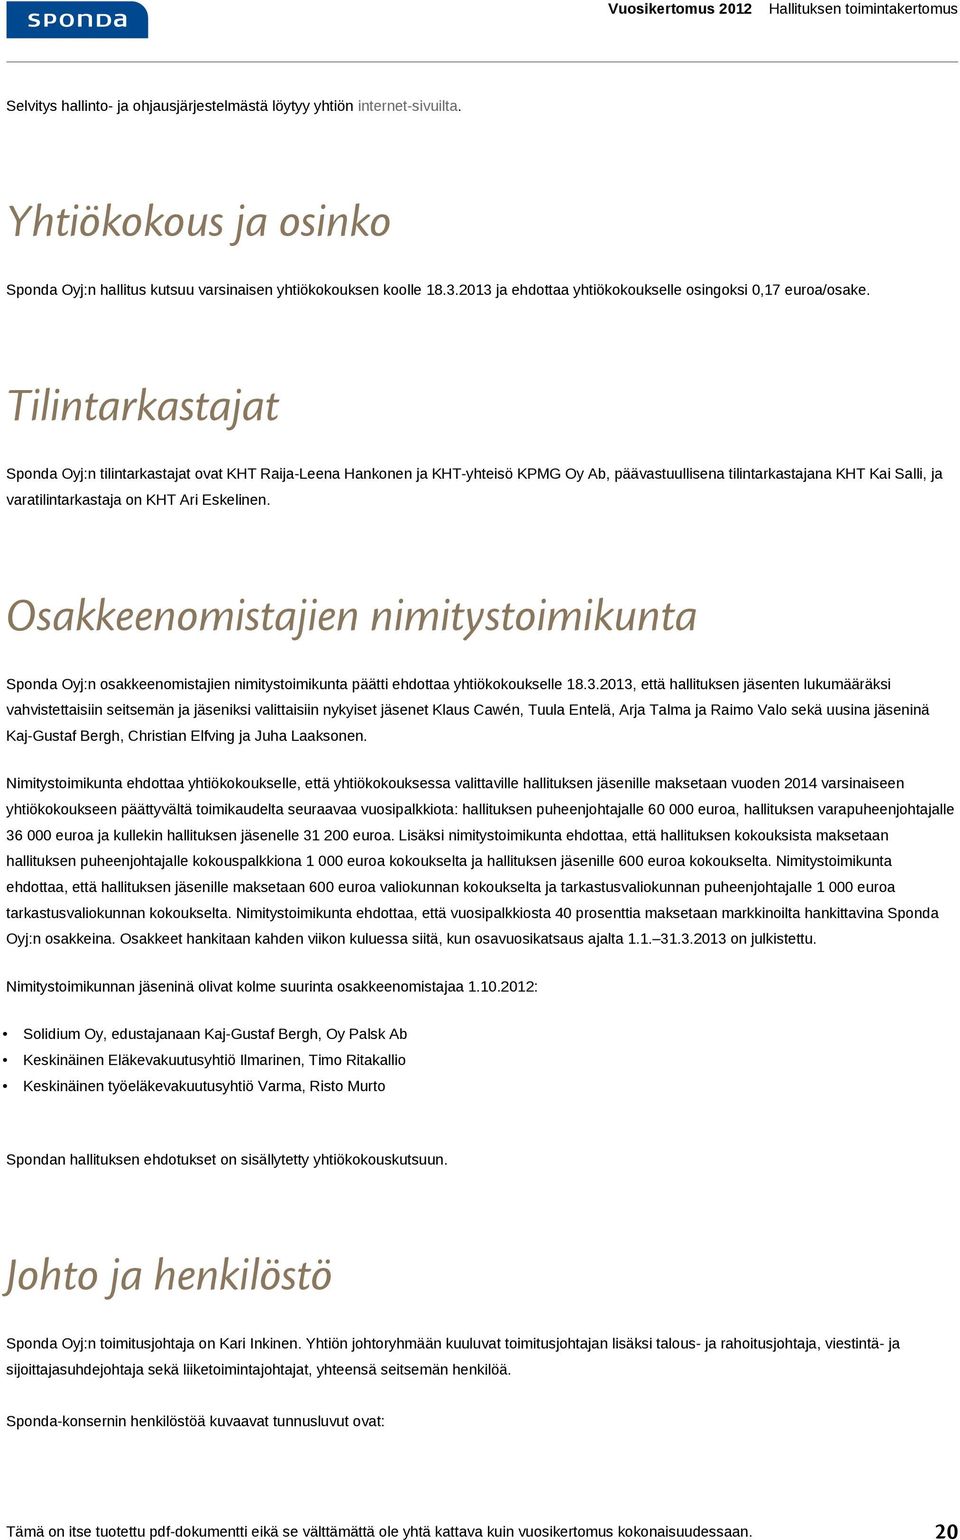 Tilintarkastajat Oyj:n tilintarkastajat ovat KHT Raija-Leena Hankonen ja KHT-yhteisö KPMG Oy Ab, päävastuullisena tilintarkastajana KHT Kai Salli, ja varatilintarkastaja on KHT Ari Eskelinen.